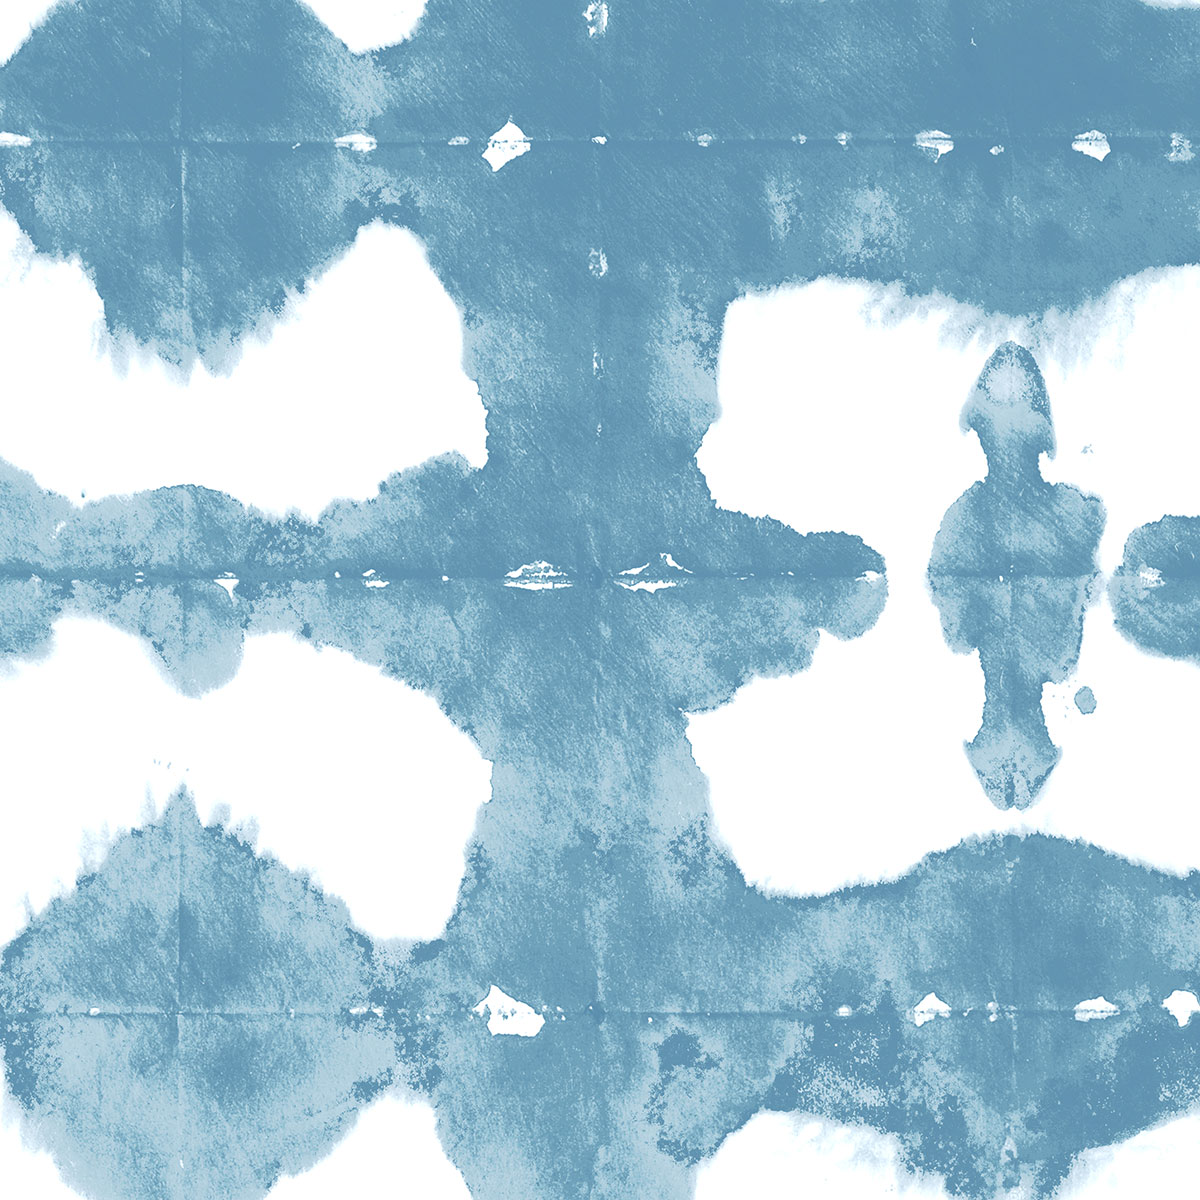 1C-Arimatsu-Ciel poudre-Detail_Laur-Meyrieux-papierpeint-wallpaper